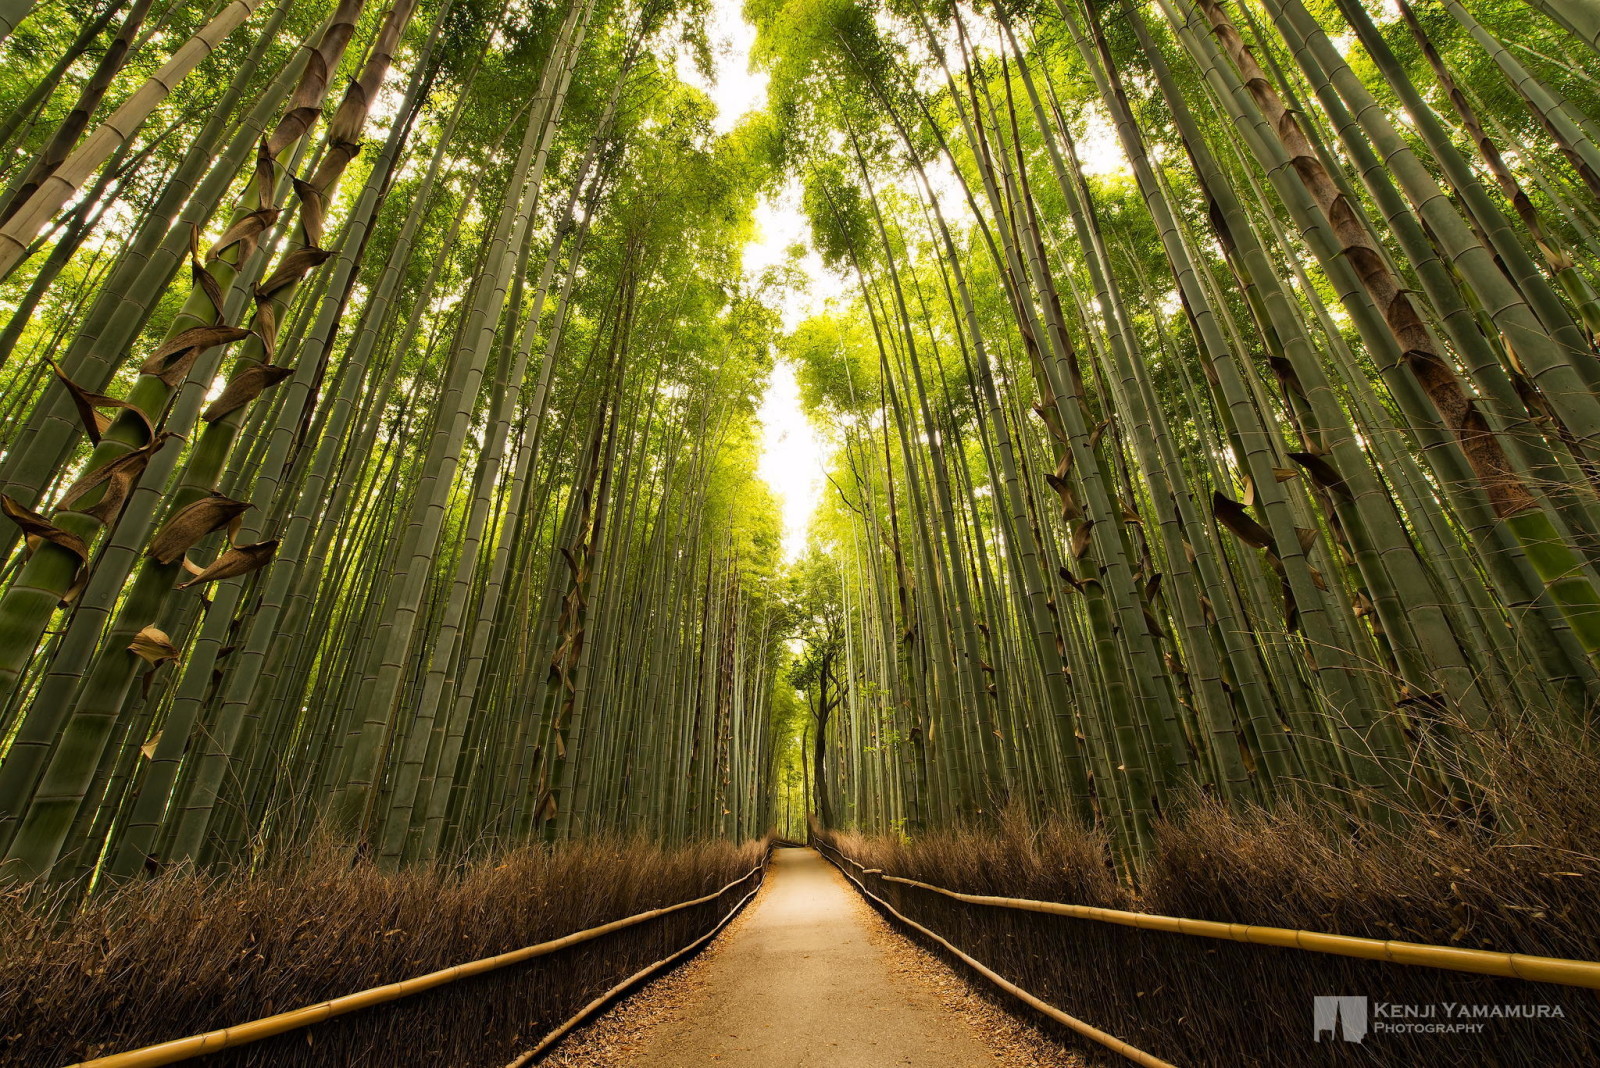 대나무, 태양, 통로, 사진 작가, 작은 숲, 야마무라 켄지